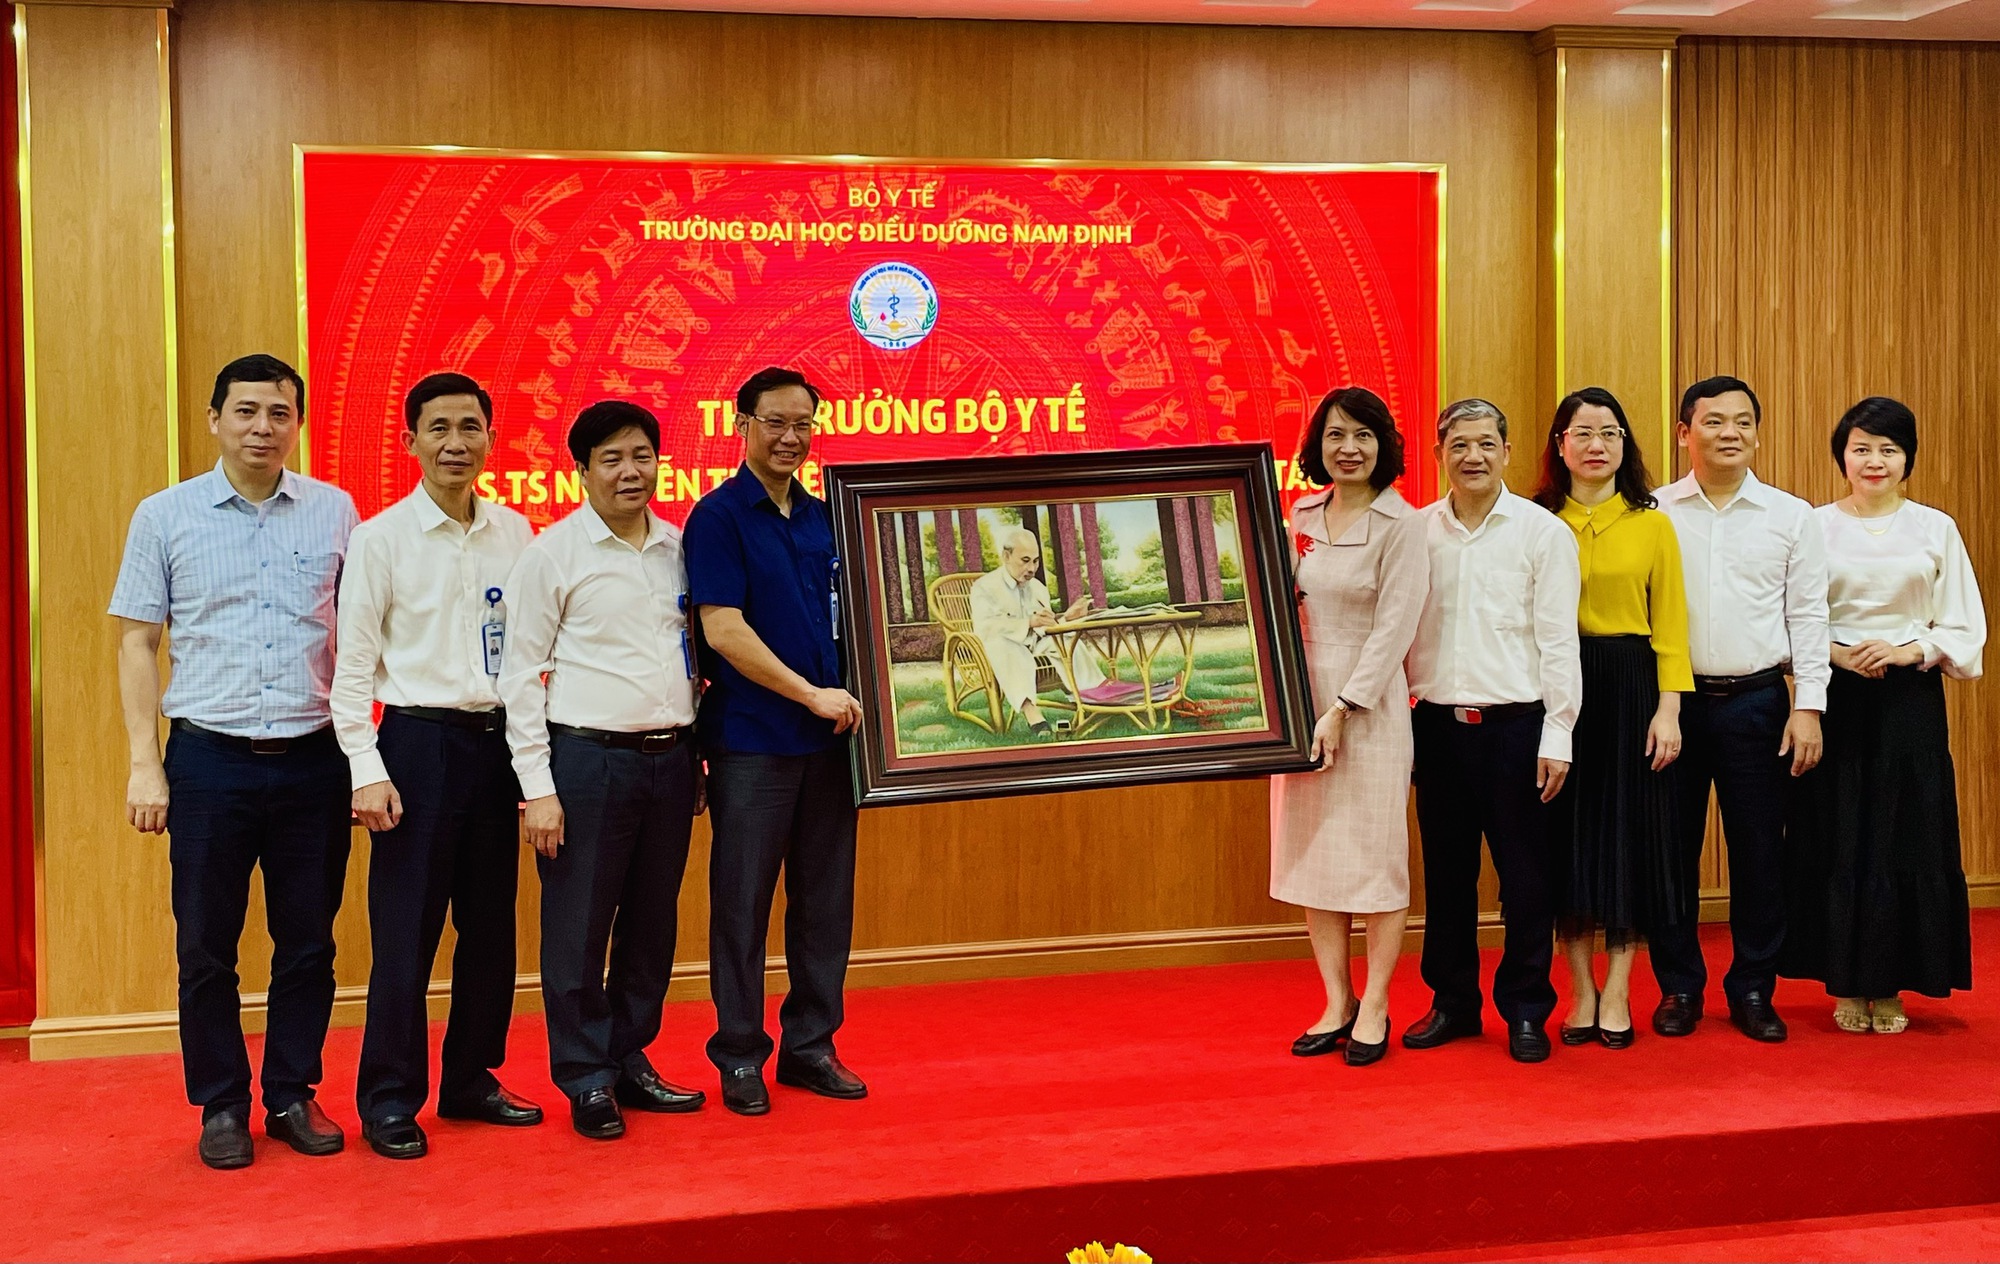 Đại học Điều dưỡng Nam Định rà soát chương trình đào tạo, tiếp tục đổi mới dạy đáp ứng hội nhập - Ảnh 3.